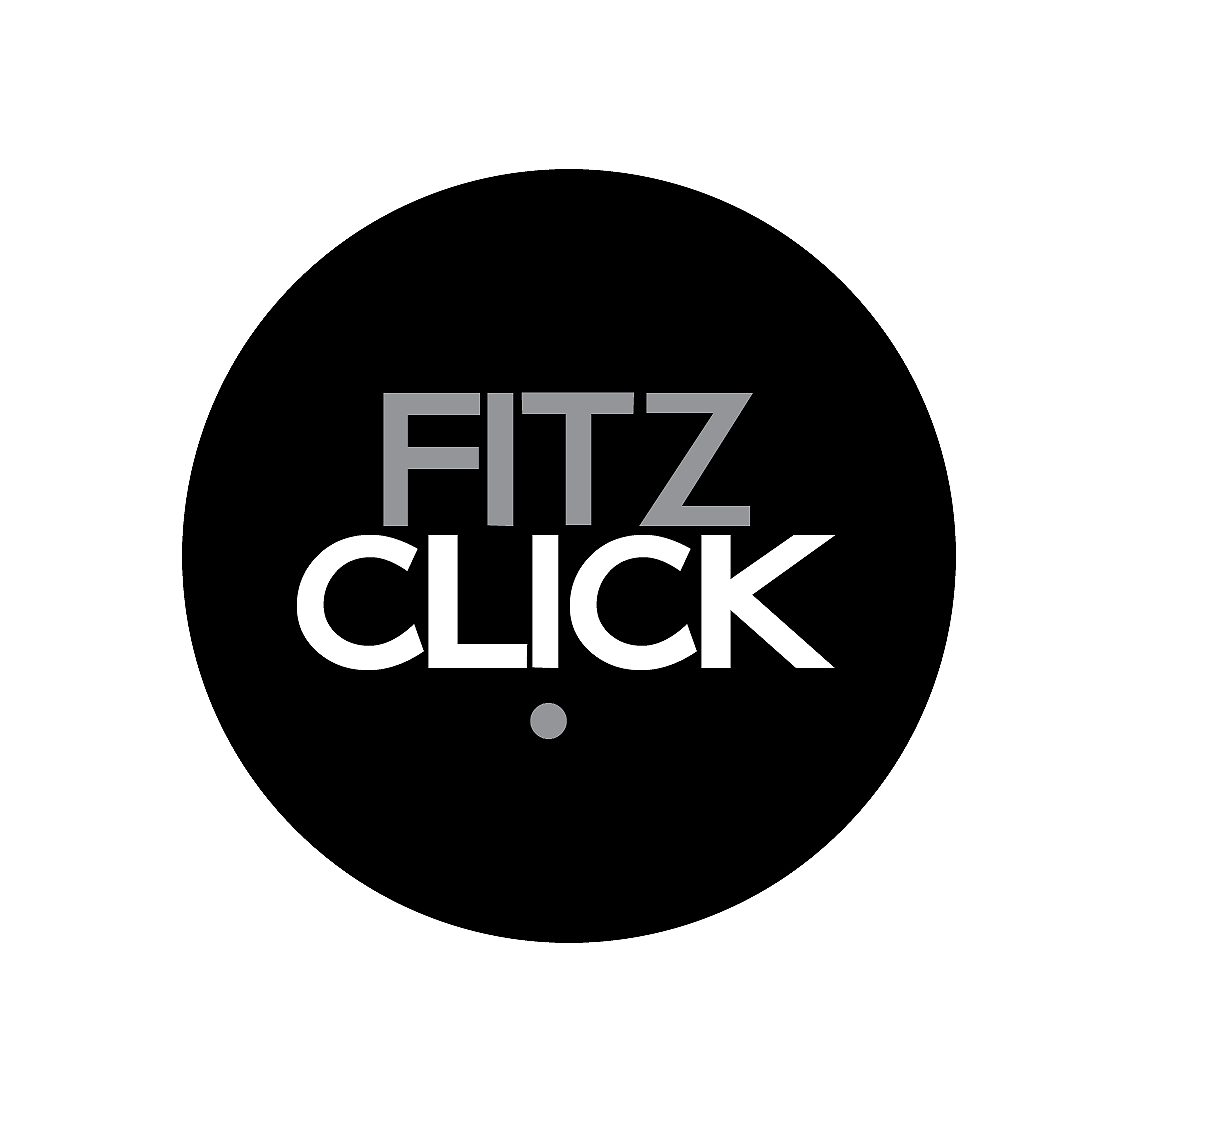 fitzclick.com